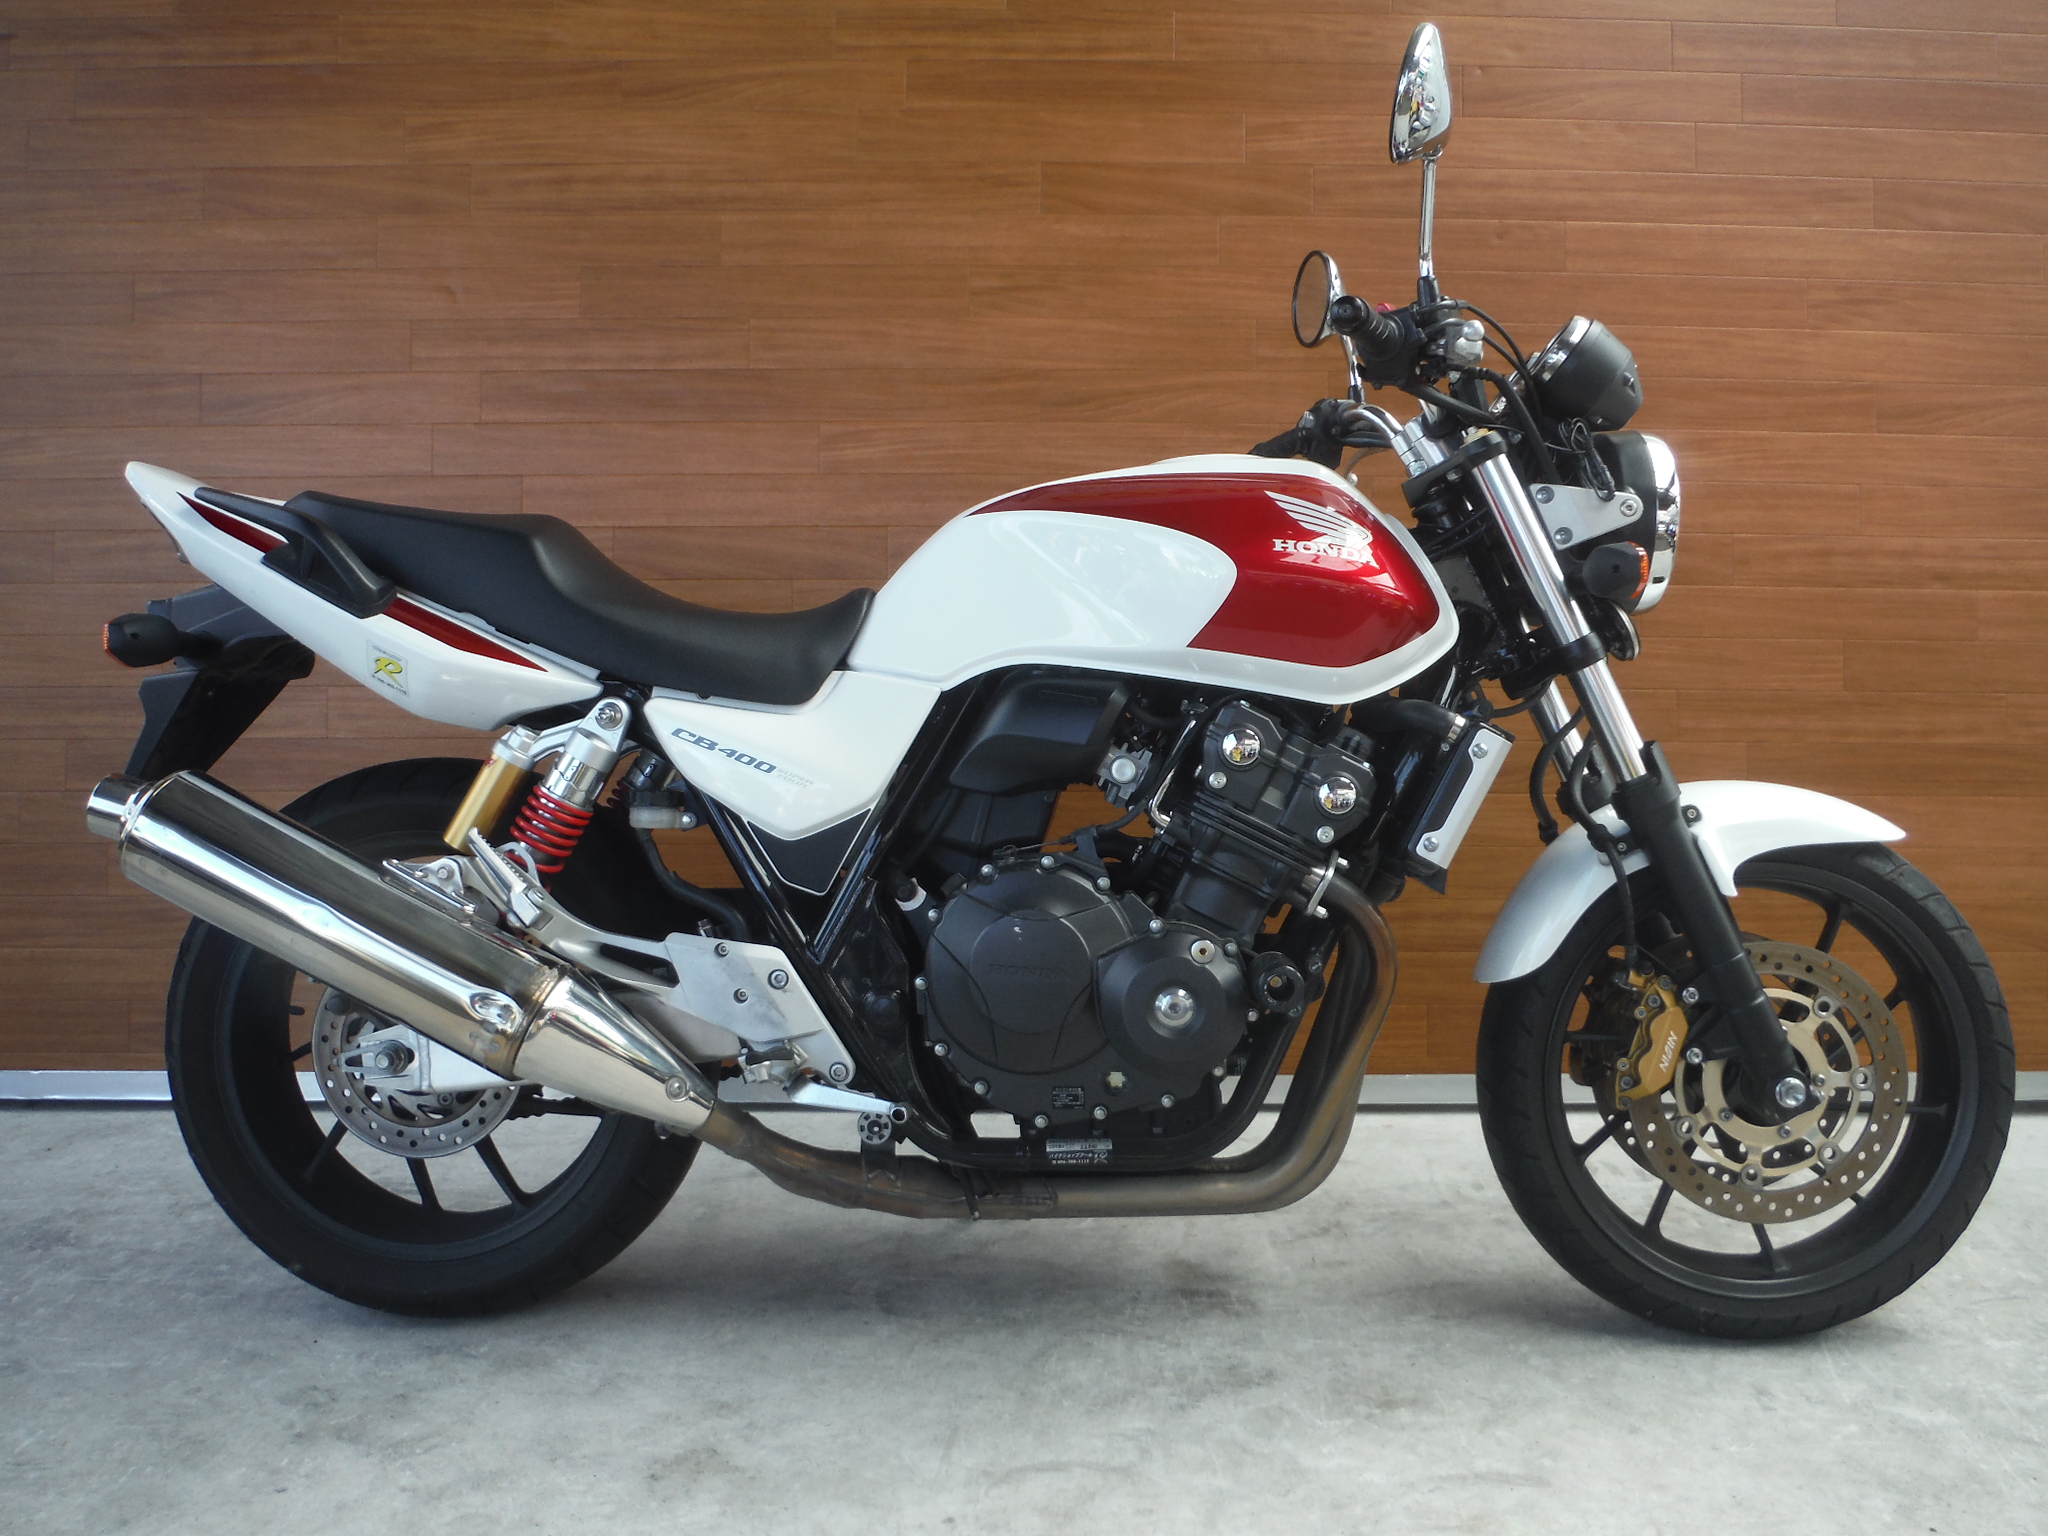 熊本中古車バイク情報 ホンダ Cb400sf 400 14年モデル 白赤 熊本のバイクショップ アール バイクの新車 中古 車販売や買取 レンタルバイクのことならおまかせください